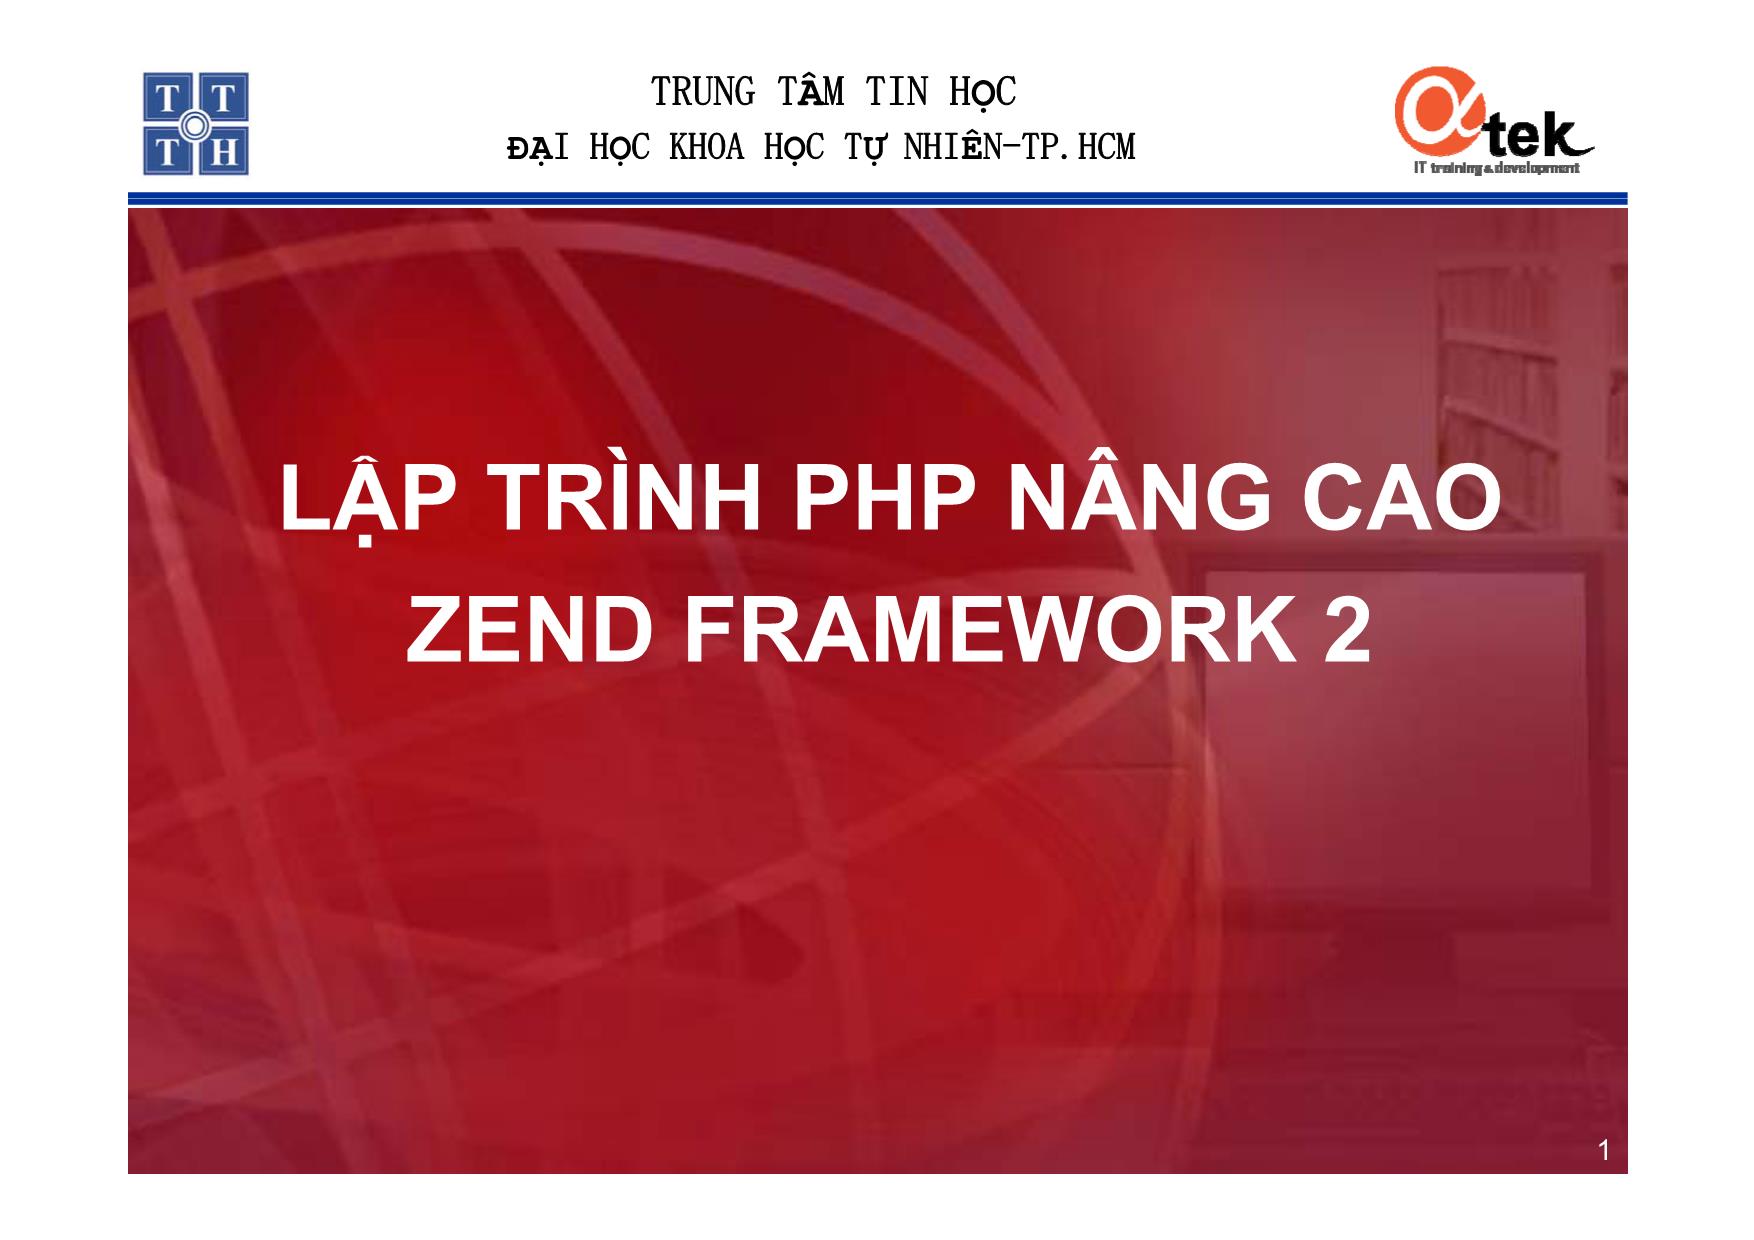 Lập trình PHP nâng cao - Zend Framework 2 trang 1